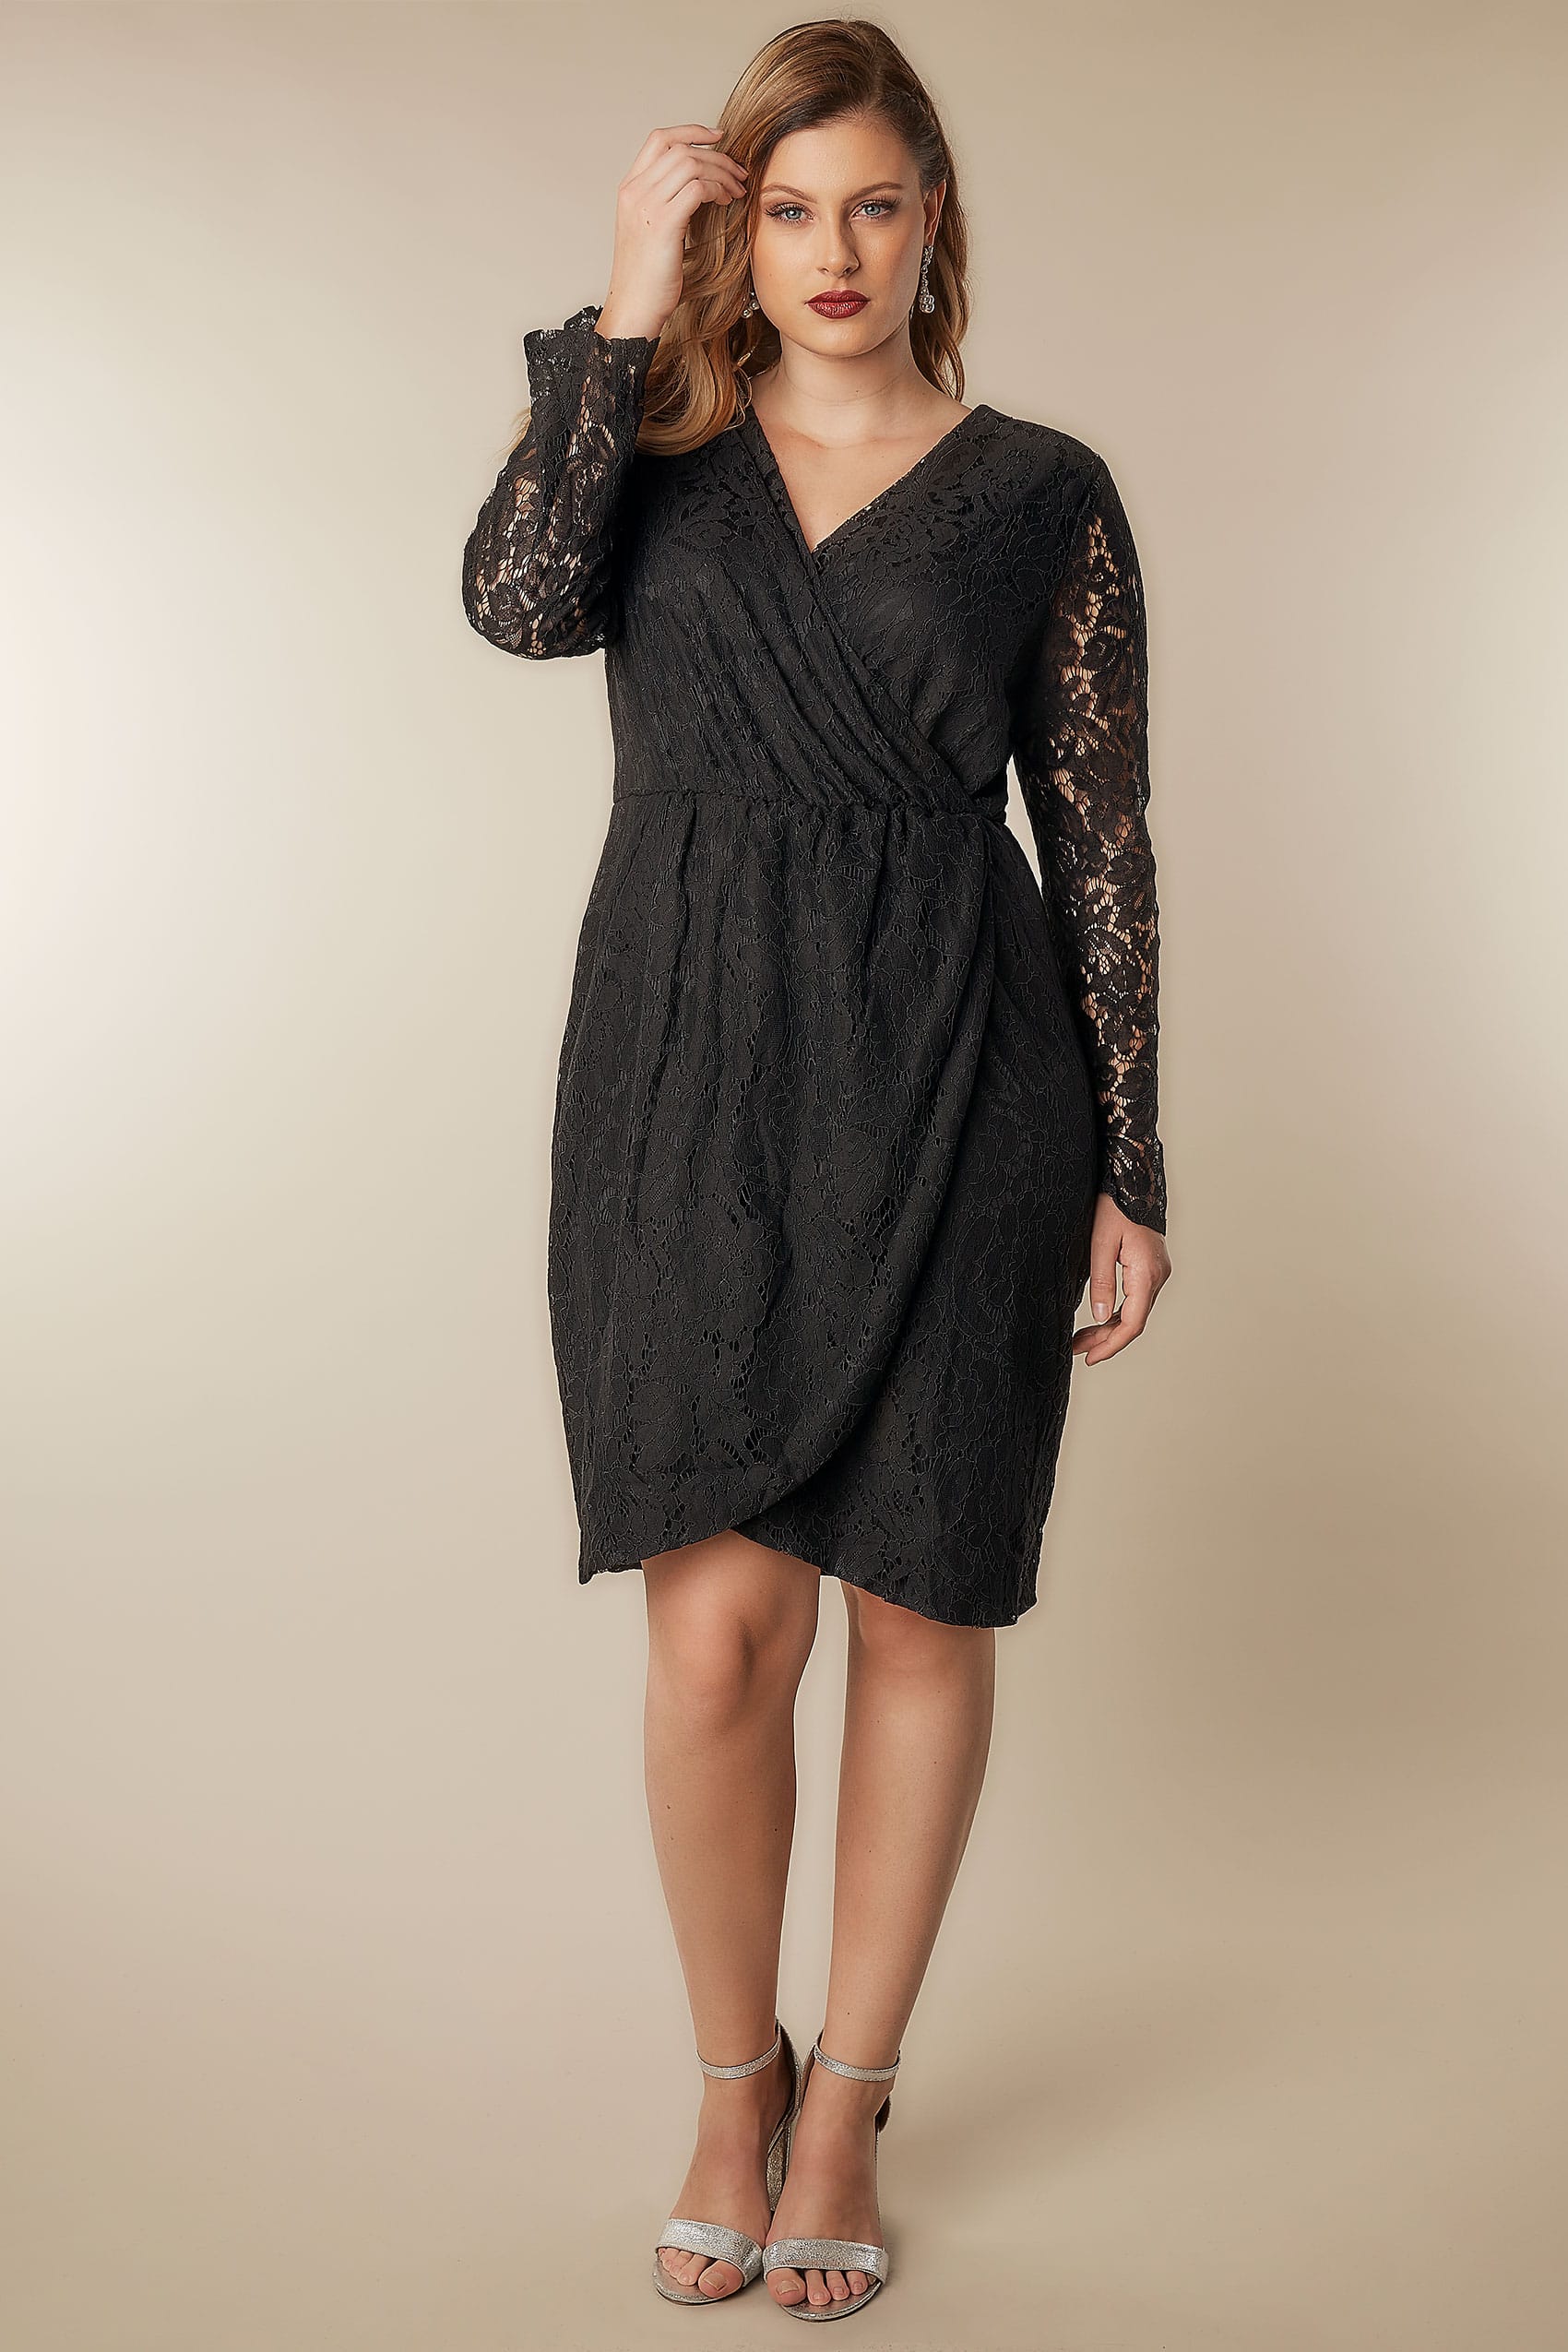 black wrap dress size 18